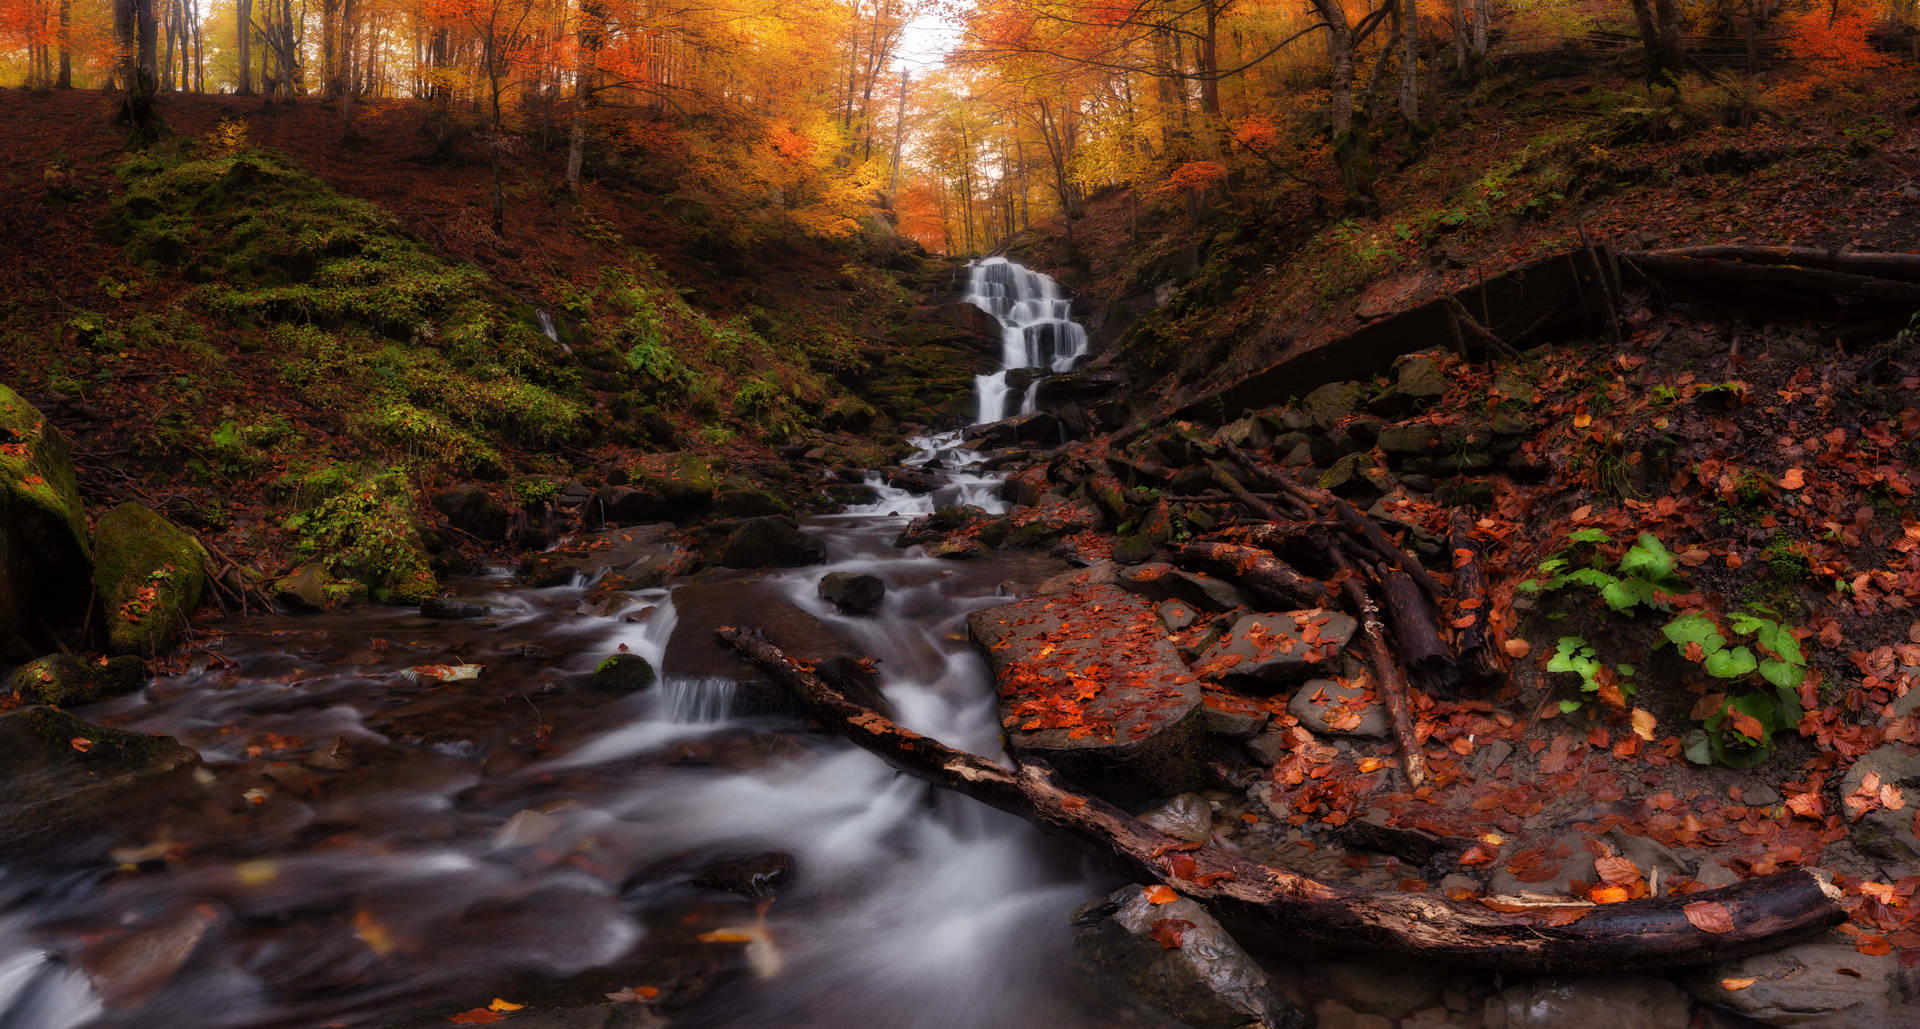 Ukraine Waterfall In Autumn